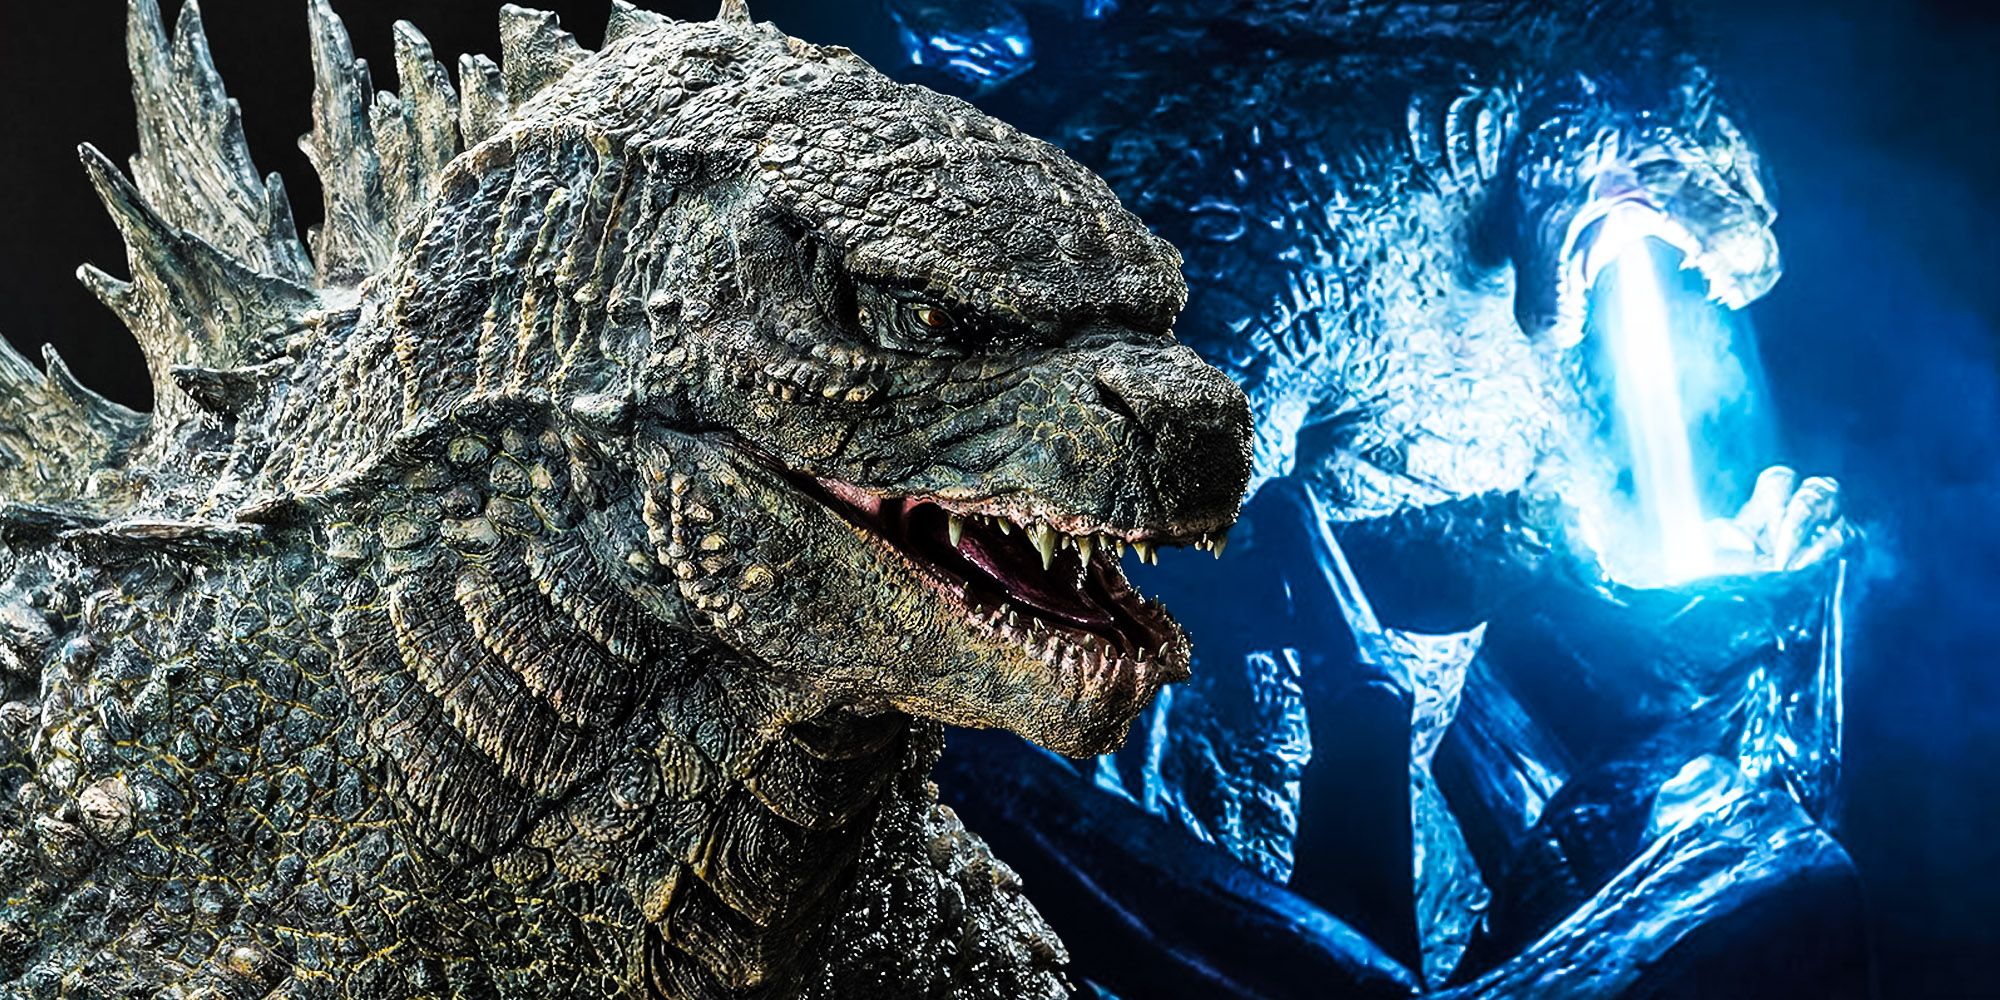 MonsterVerse actualiza oficialmente el ataque más brutal de Godzilla más allá de sus antiguos límites